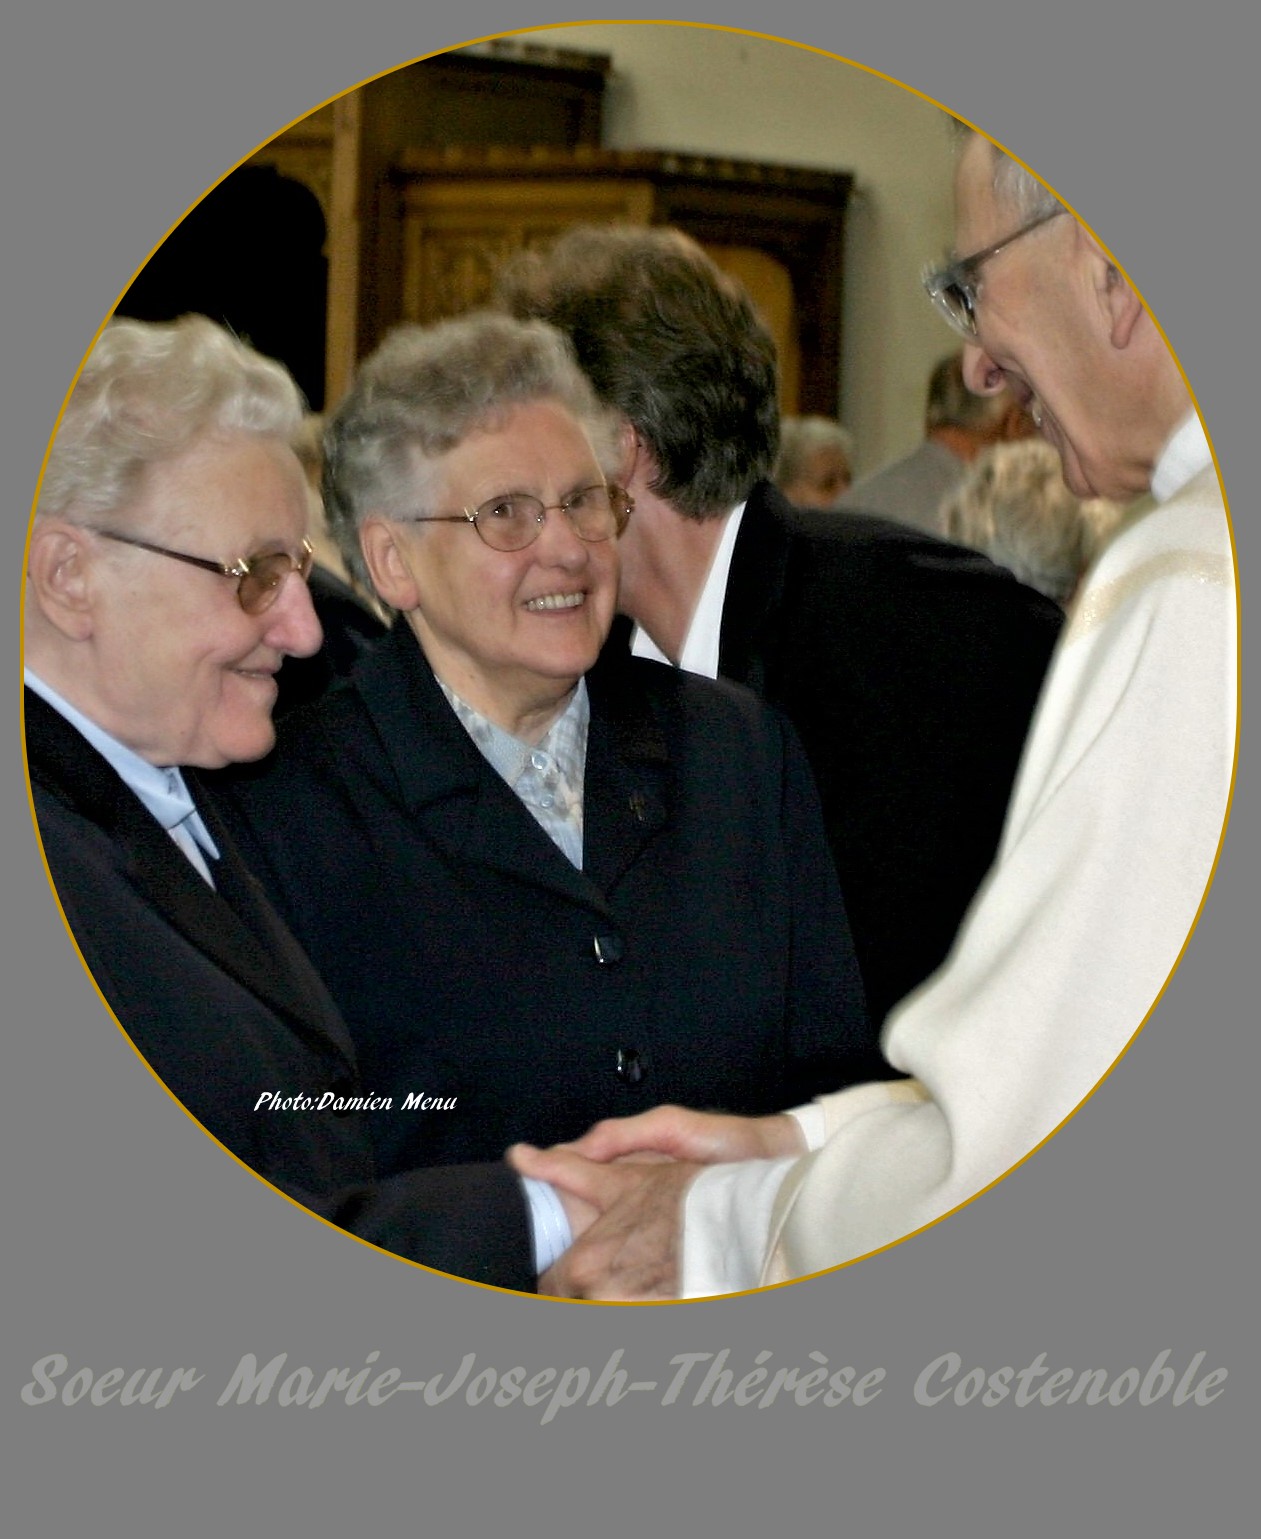 Au centre de la photo, Soeur Marie-Joseph-Thérèse avait en juillet 2006 fêté son jubilé de cinquante années de religieuse au même titre que Soeur Marie-Louise Baelden.